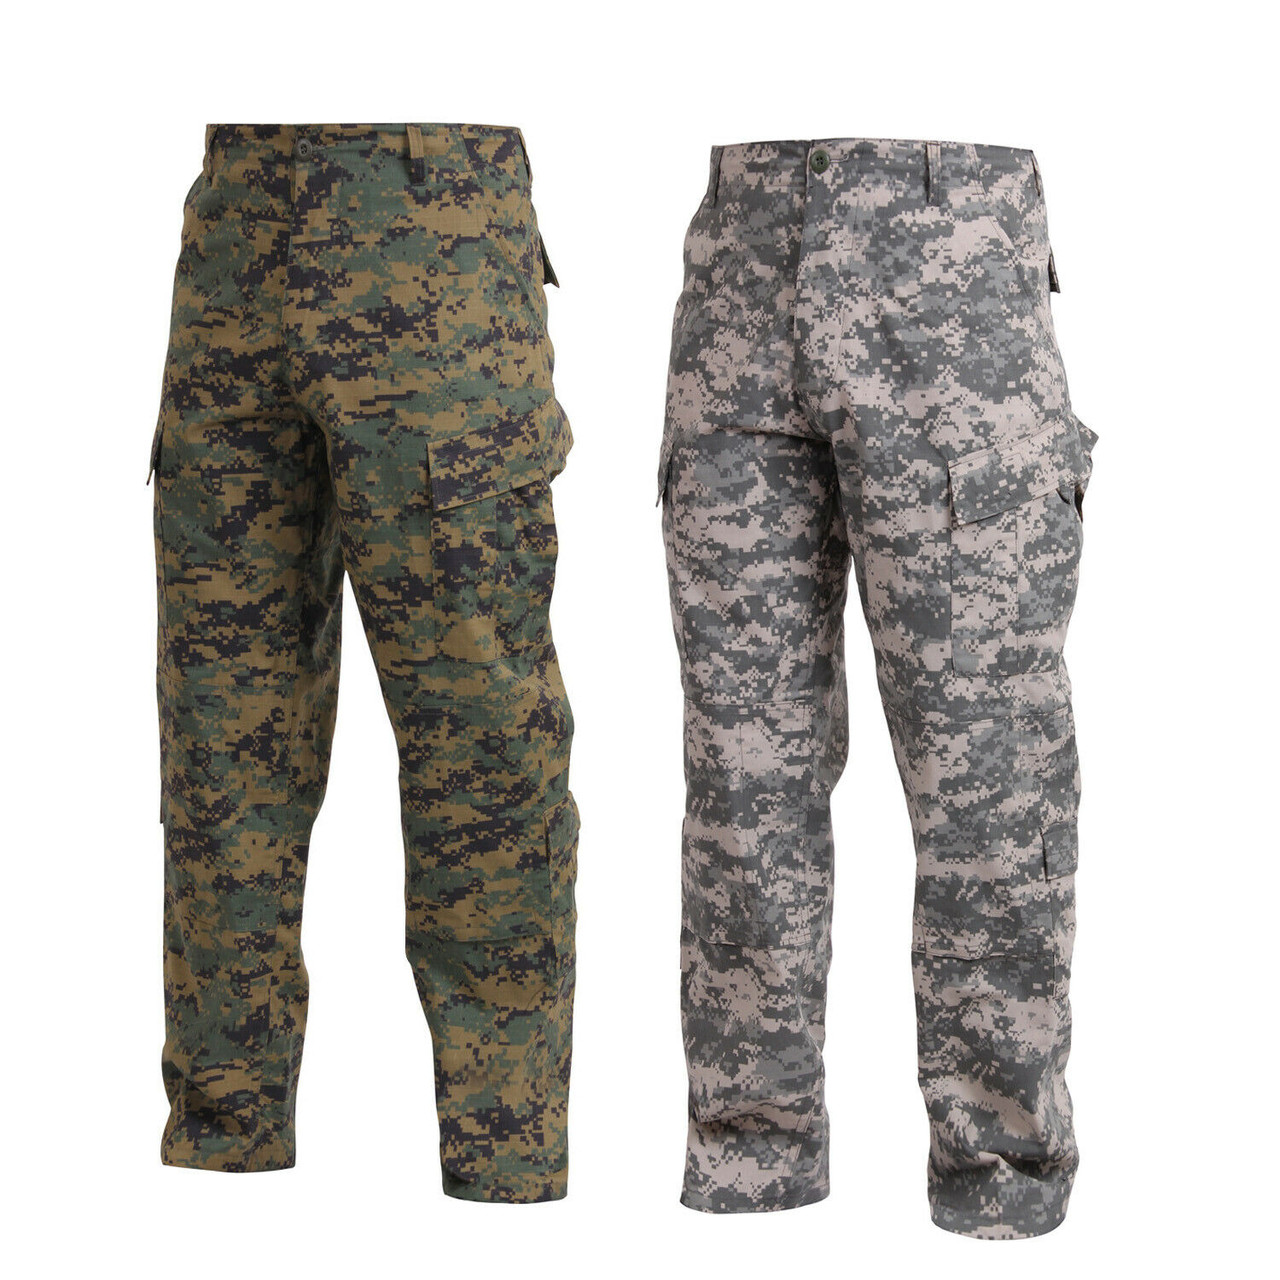 Rothco - Army Combat ACU Digital Camo Uniform Shirt